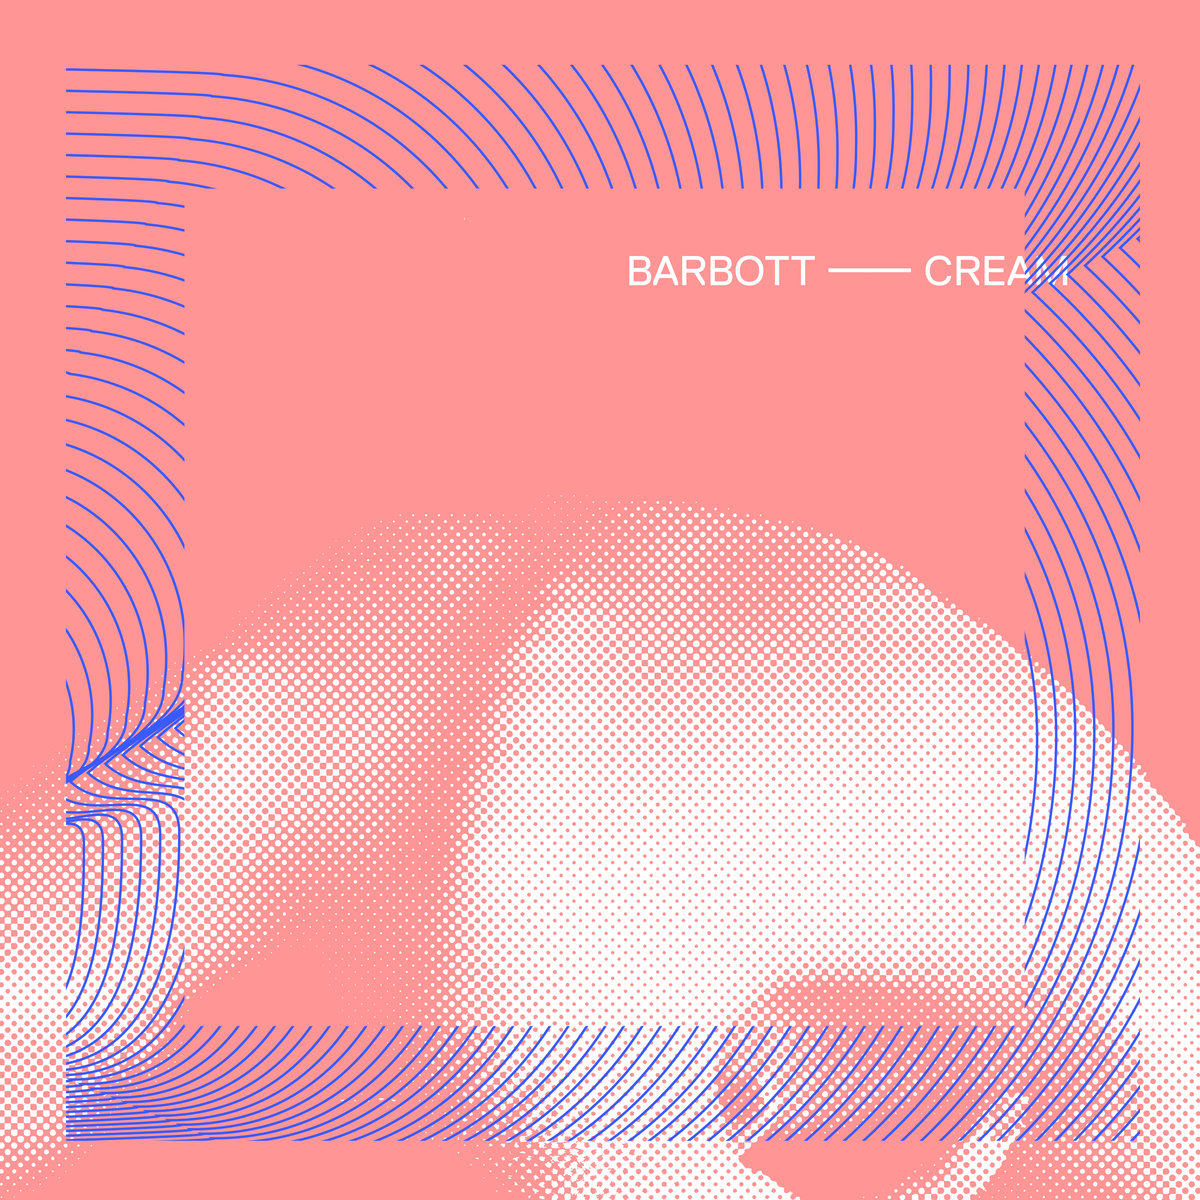 Barbott's Cream Single Artwork